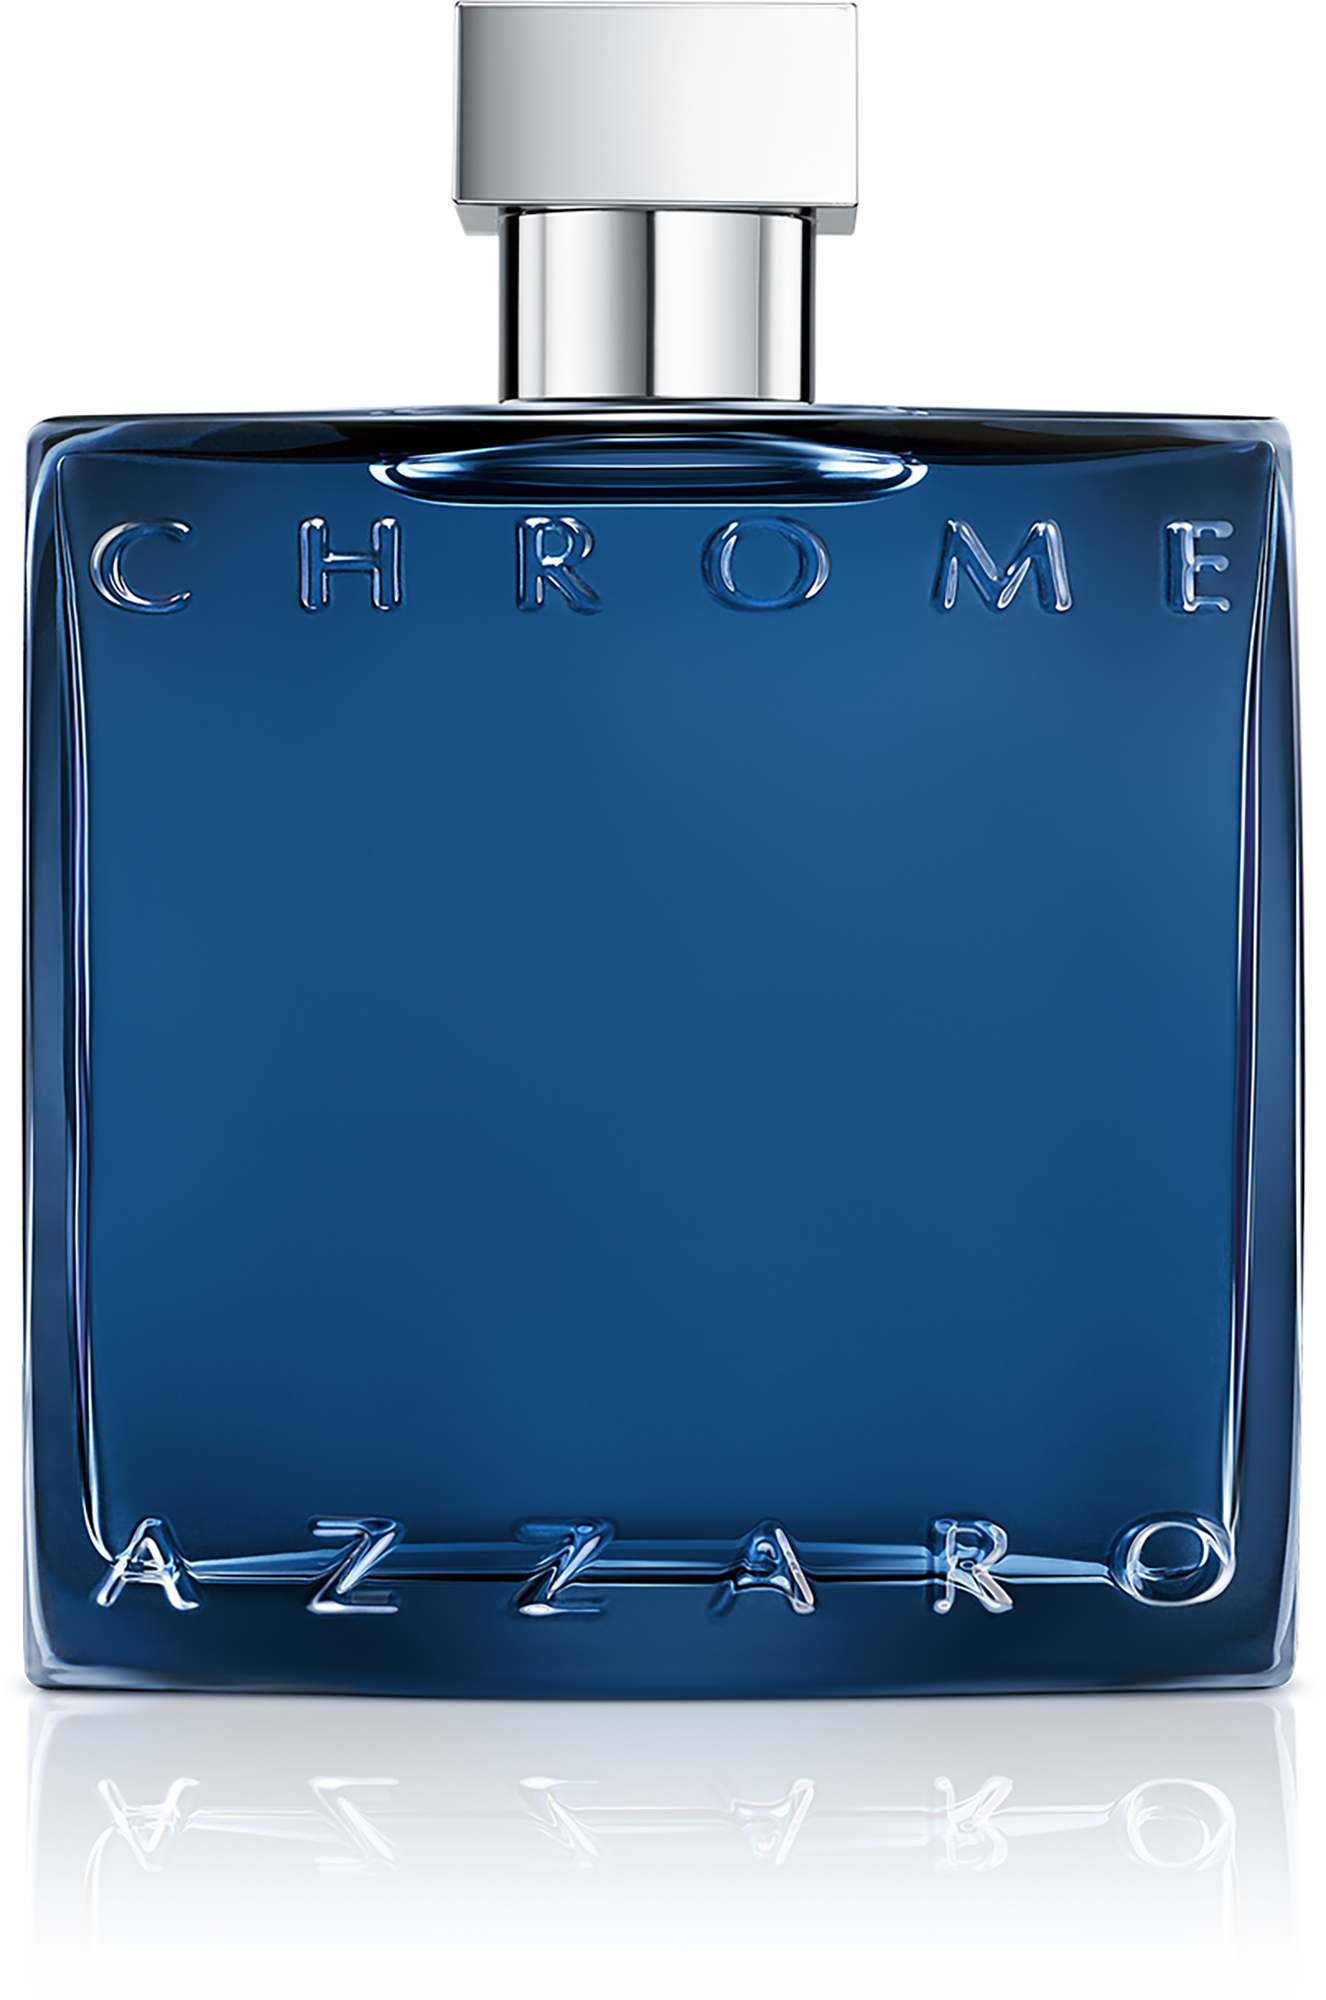 Azzaro Chrome Parfum 100 ml